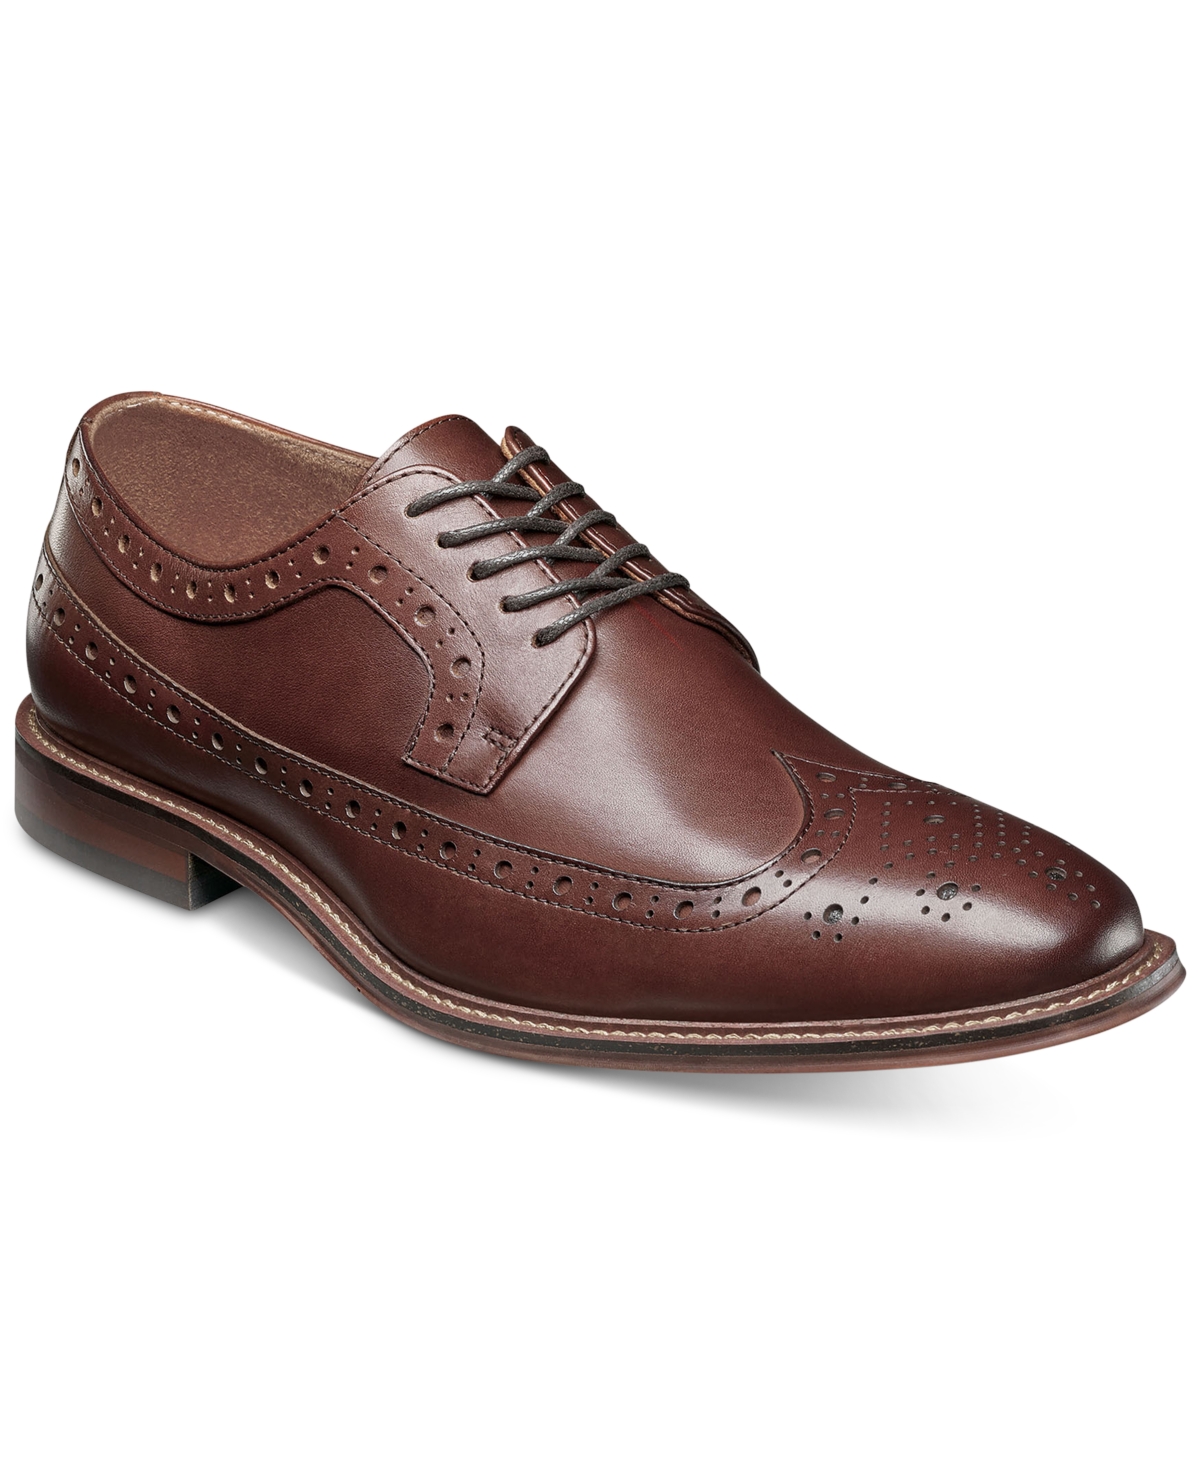 Men's Marledge Leather Wingtip Oxford Dress Shoes - Bordeaux